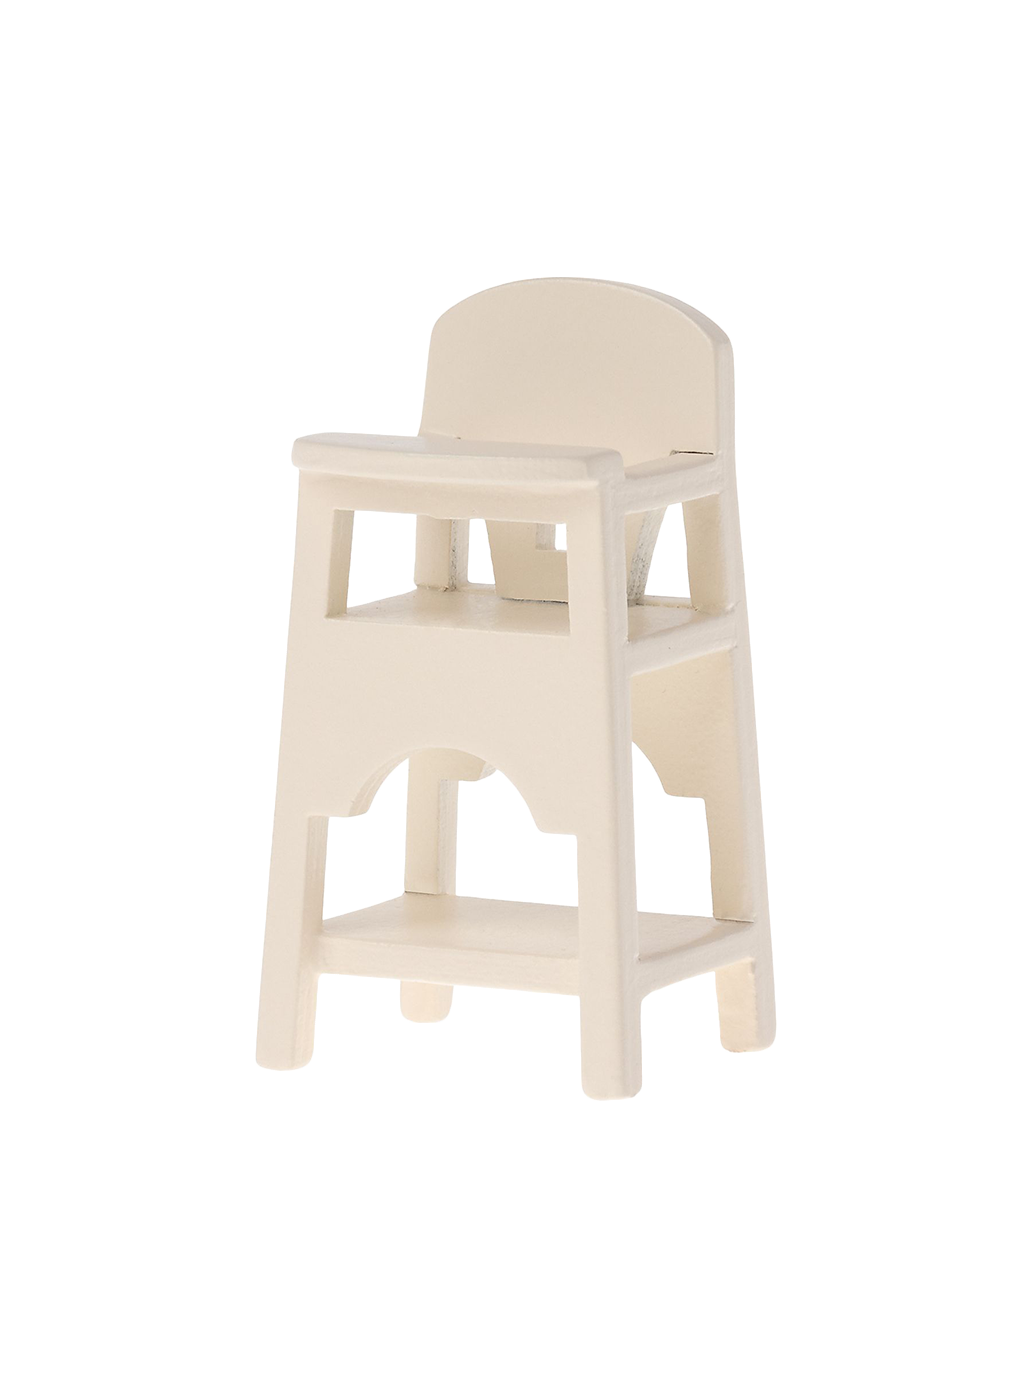 Miniaturowe krzesełko do karmienia